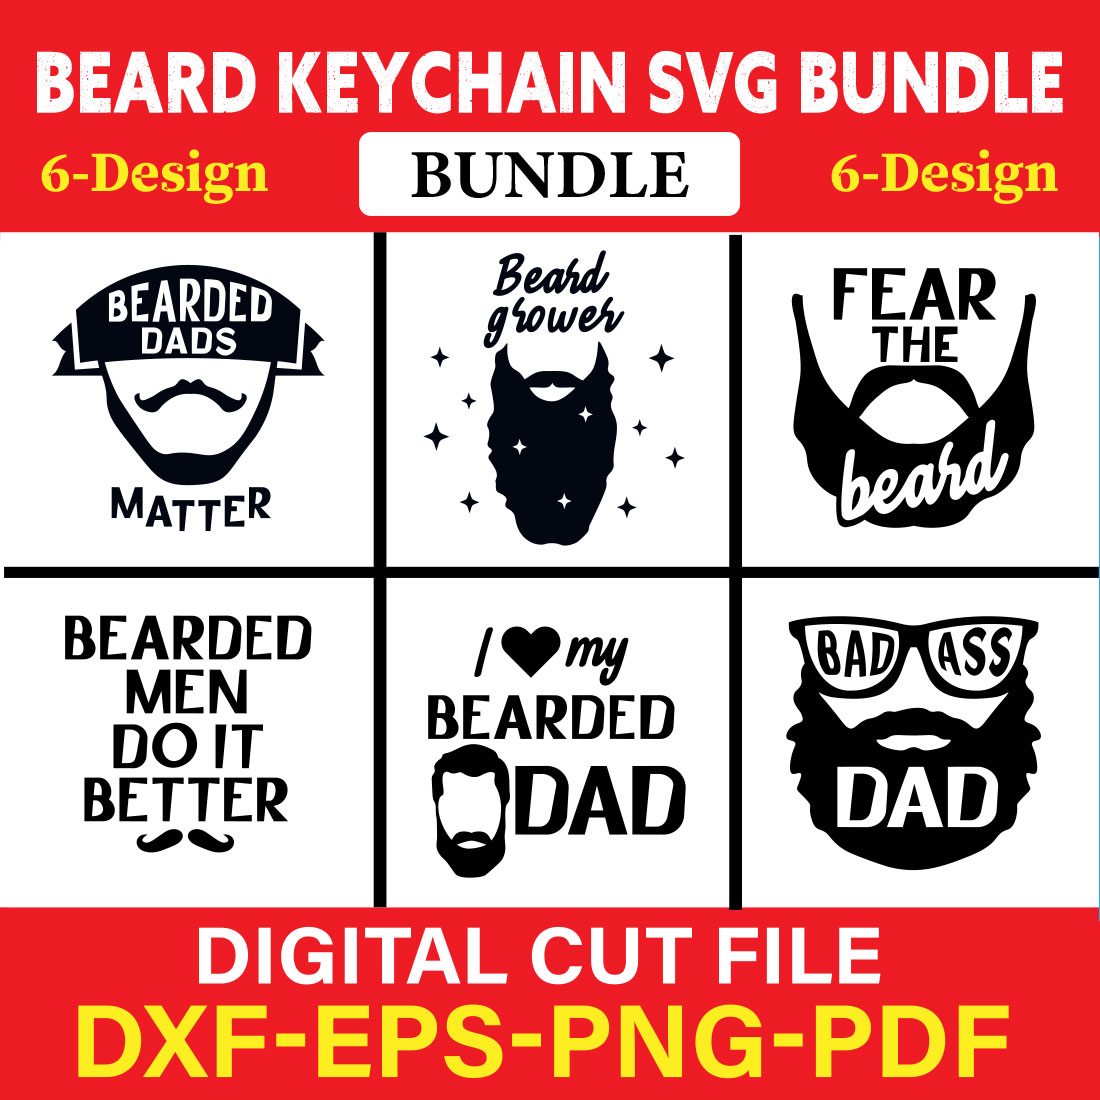 Motivation Keychain SVG Bundle, Round Keychain Design